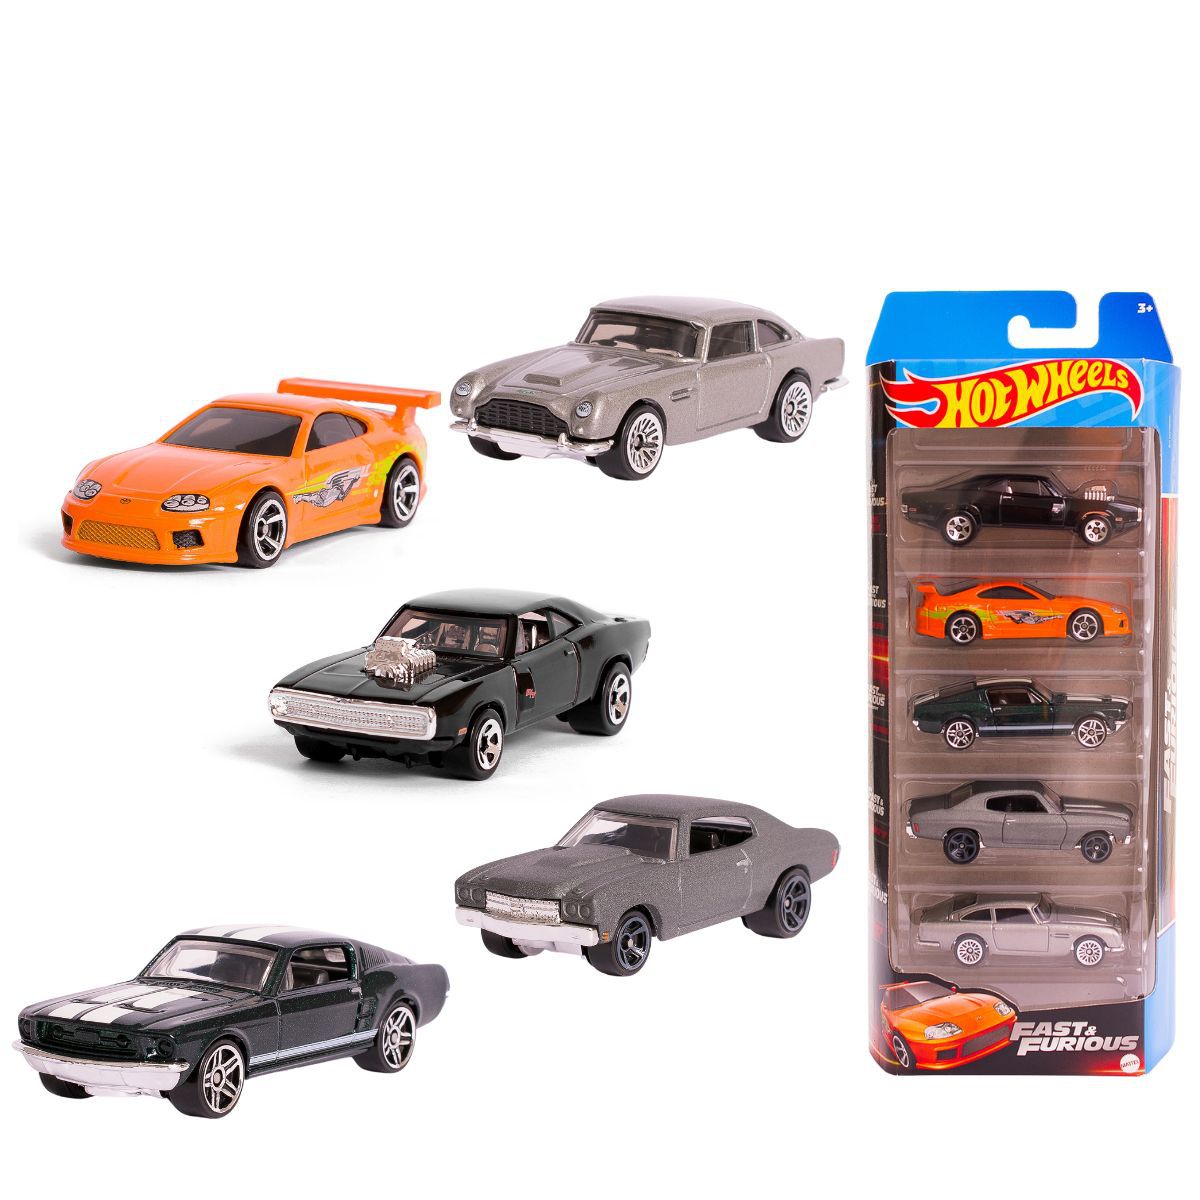 Pack 5 Carrinhos Hot Wheels Velozes e Furiosos - Mattel - Novo Mundo